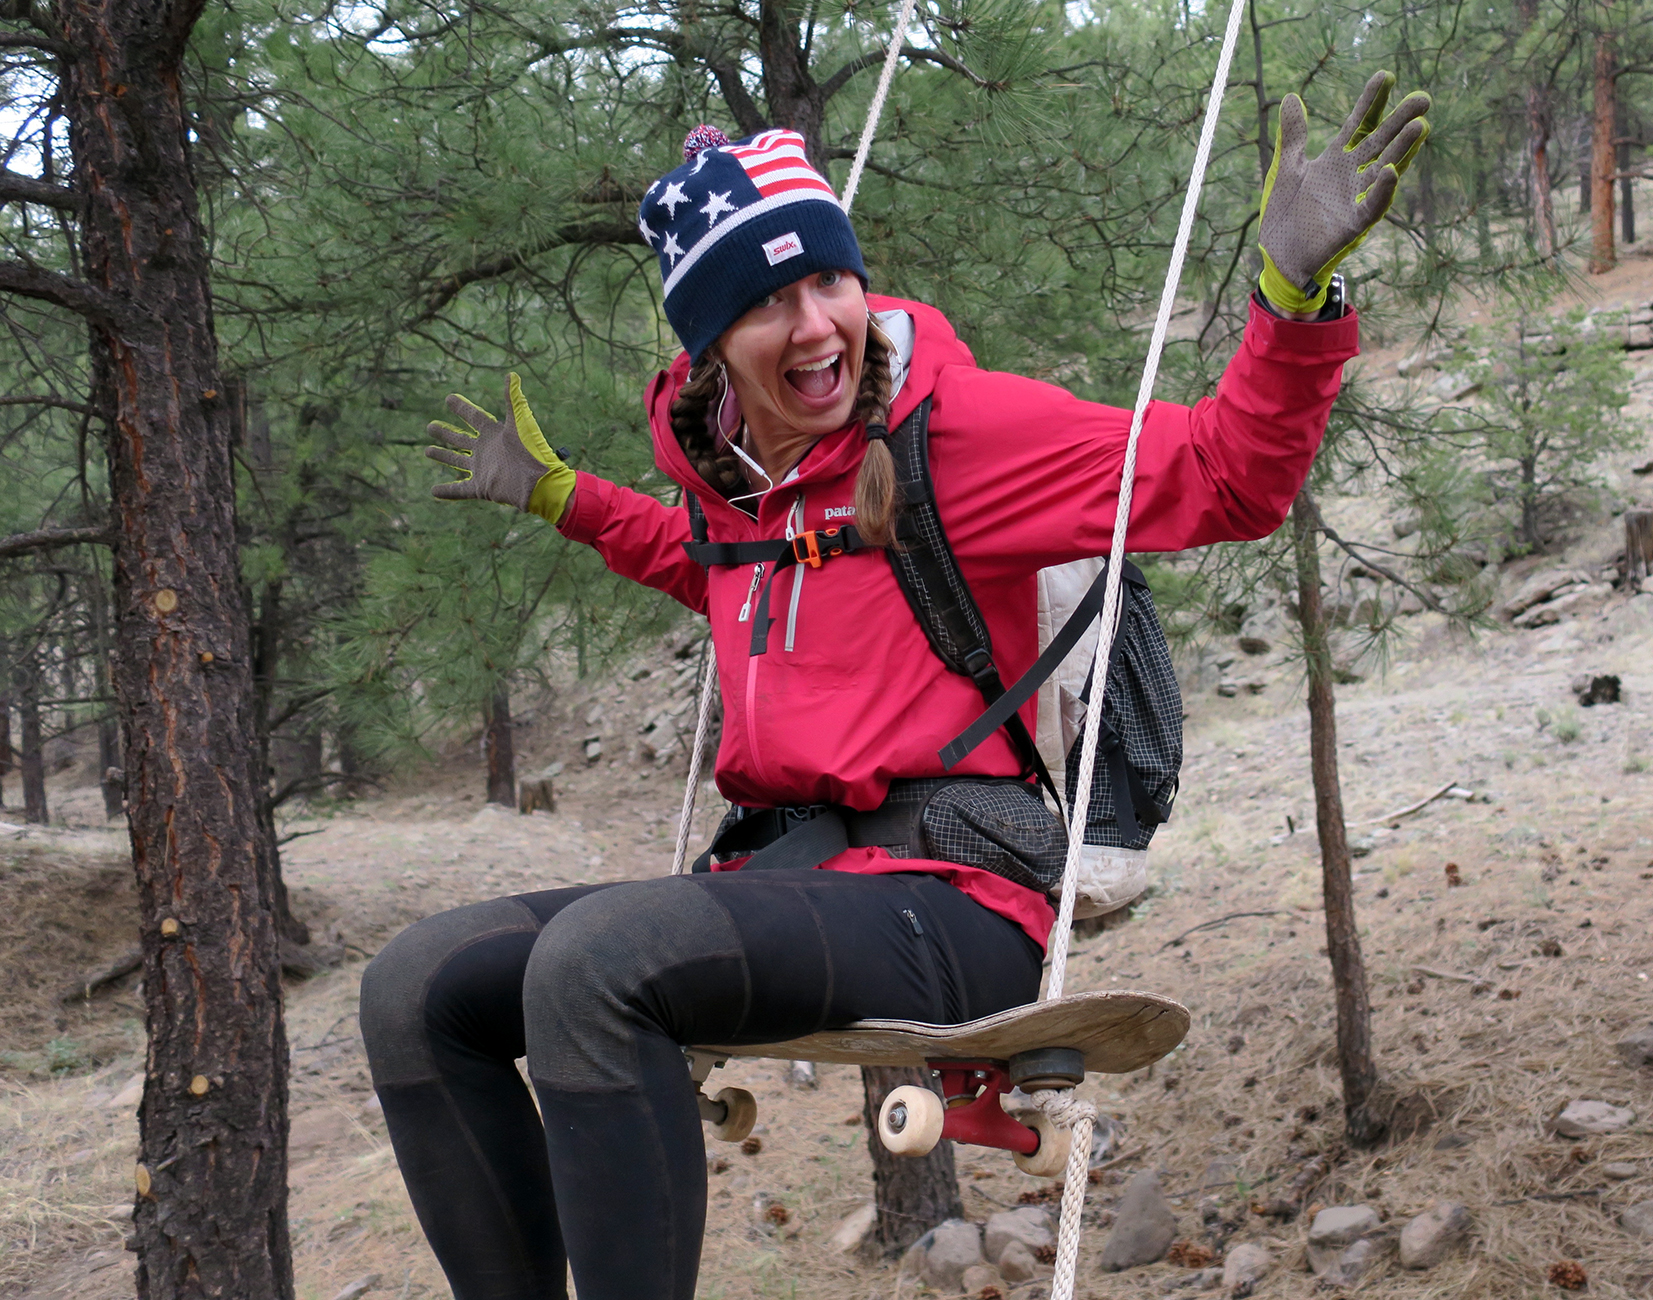 Fjällräven Abisko Trekking Tights Pro: The Best Women's Trekking Tights